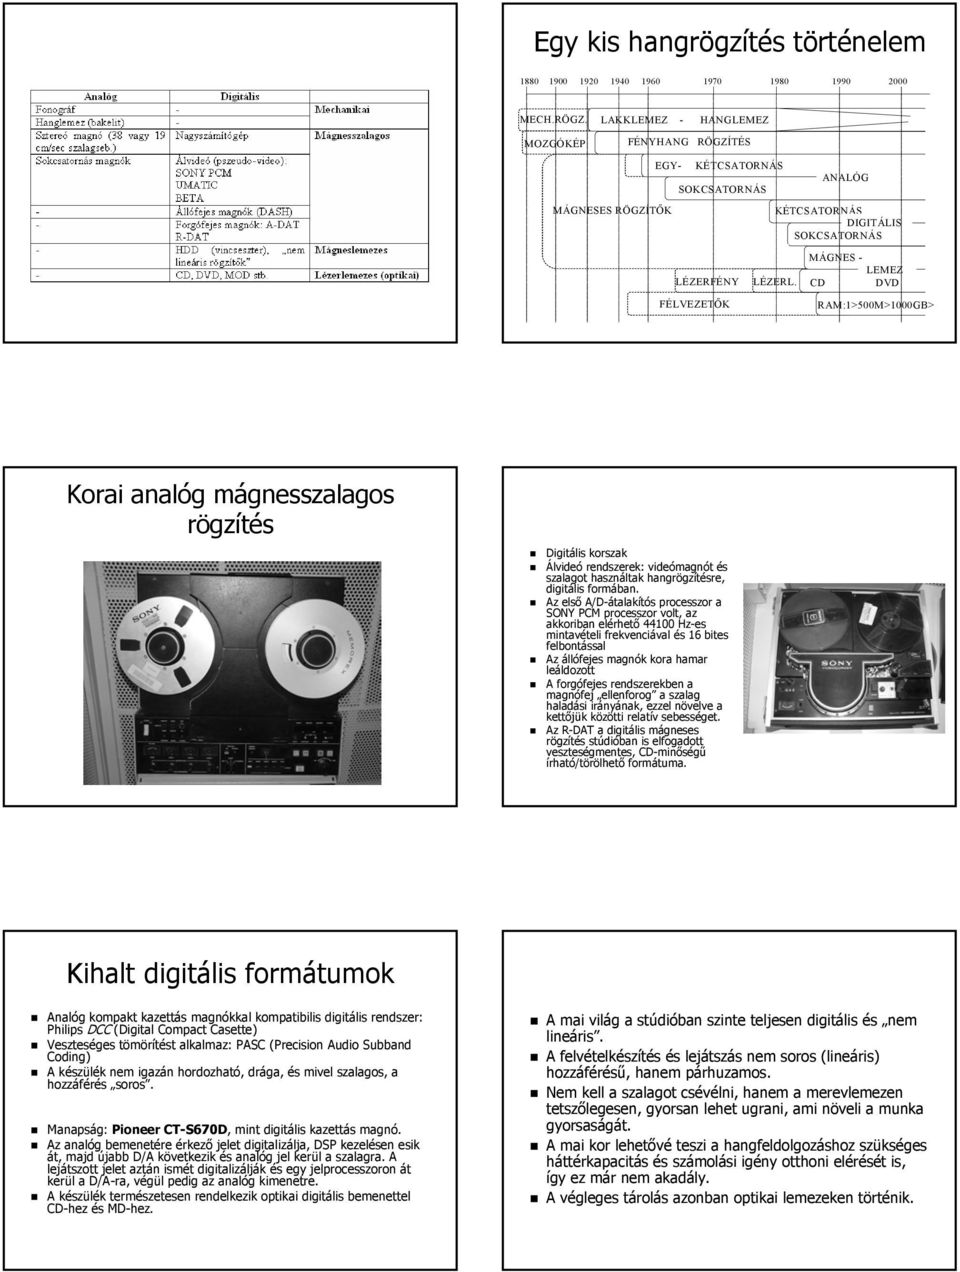 MÁGNES - LEMEZ CD DVD RAM:1>500M>1000GB> Korai analóg mágnesszalagos rögzítés Digitális korszak Álvideó rendszerek: videómagnót és szalagot használtak hangrögzítésre, digitális formában.